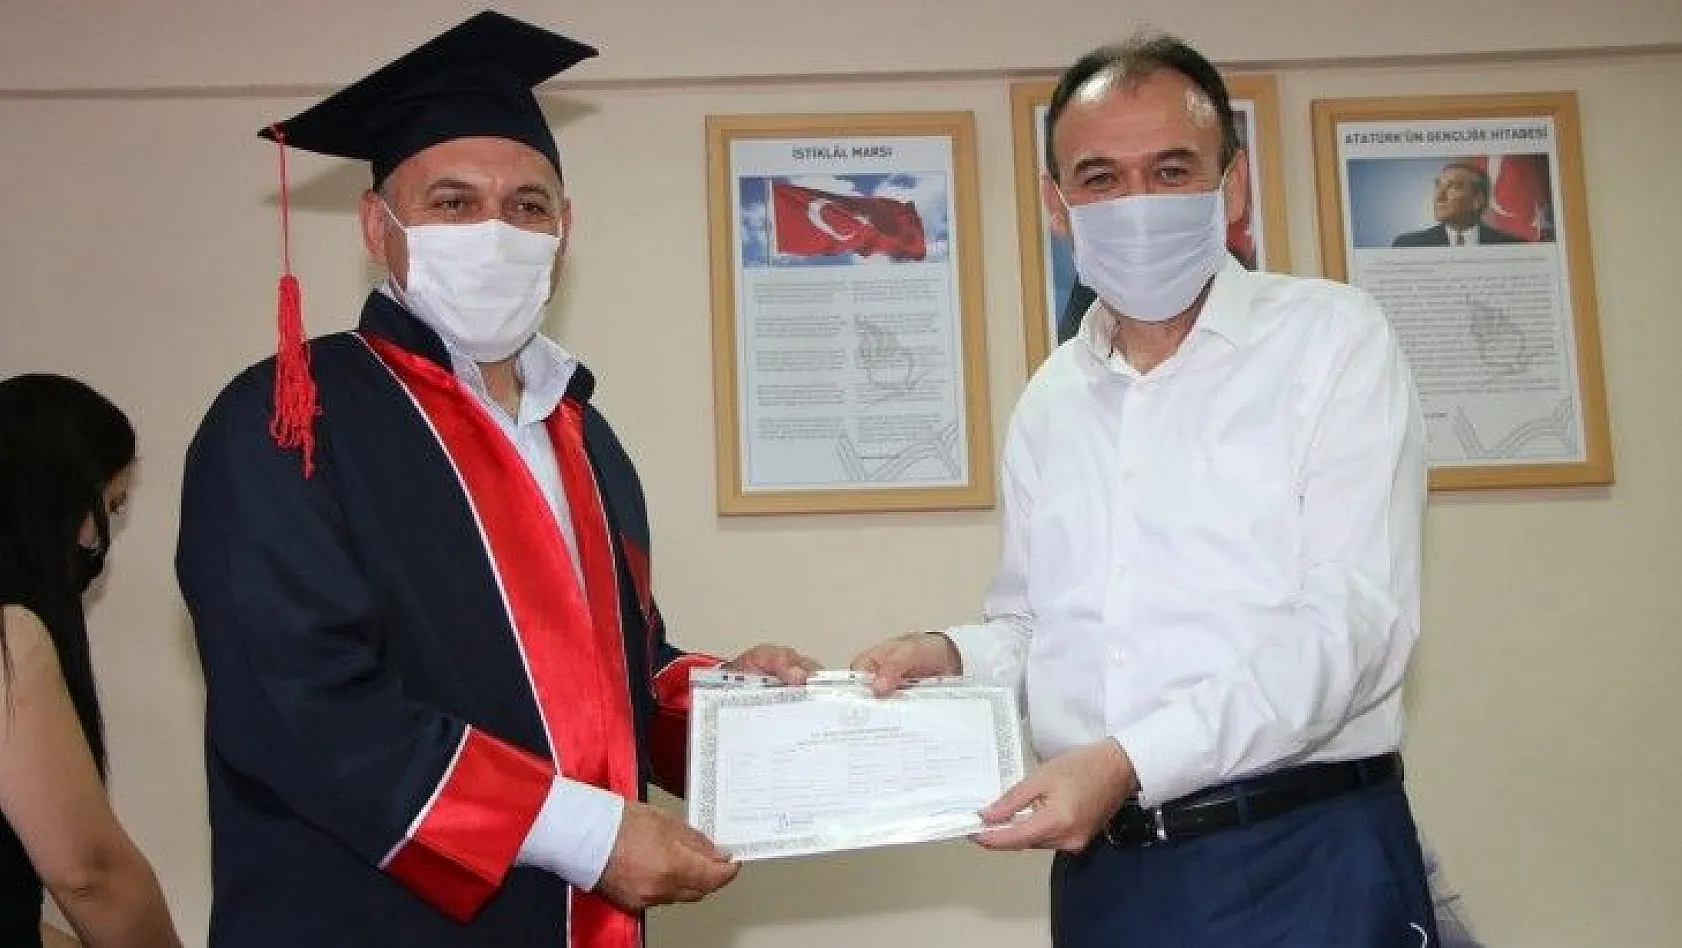 Türkiye'de ilk kez hem lise hem ustalık diploma töreni gerçekleştirildi